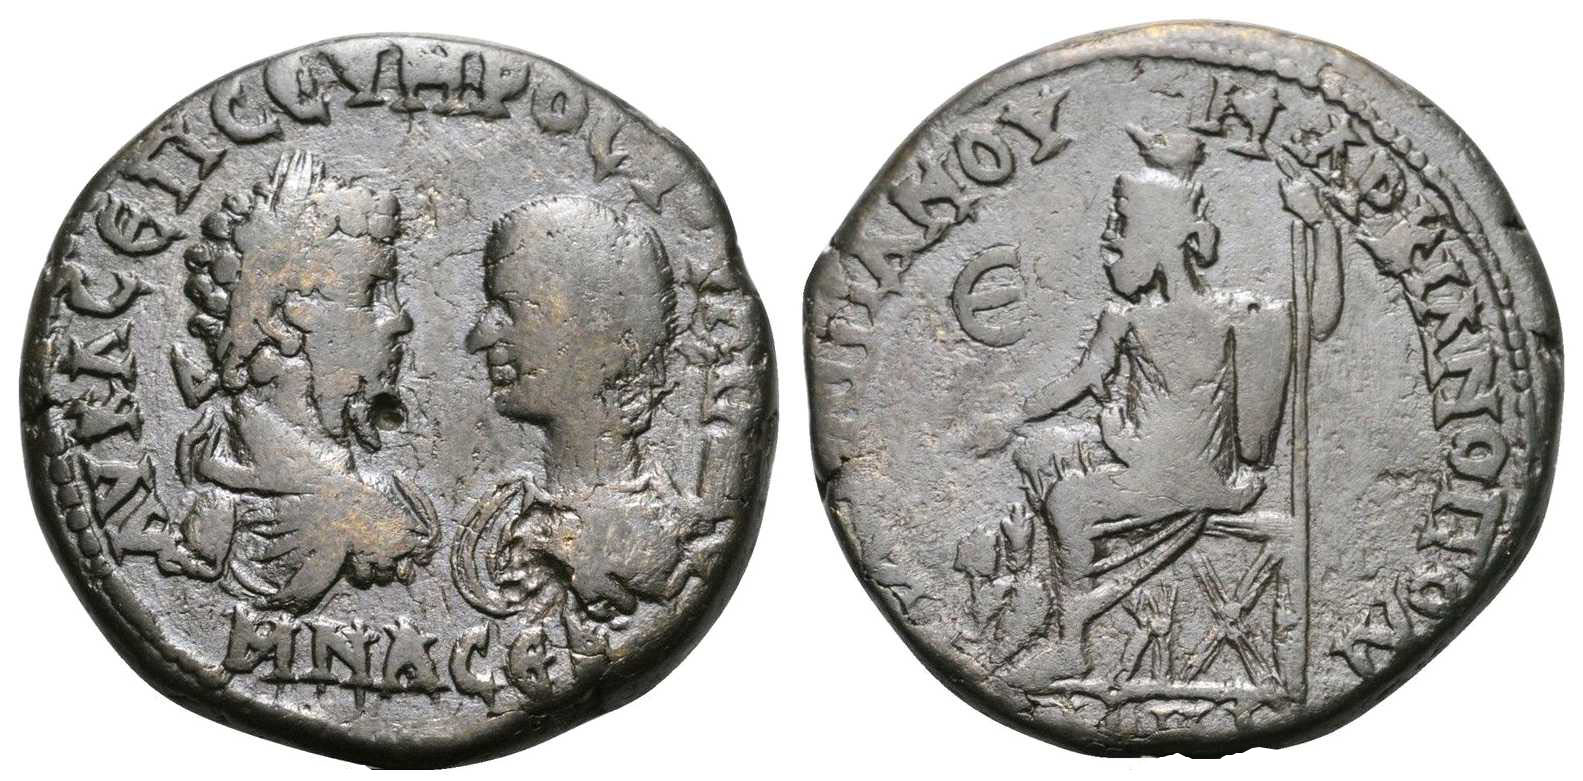 5878 Marcianopolis Moesia Inferior Septimius Severus AE